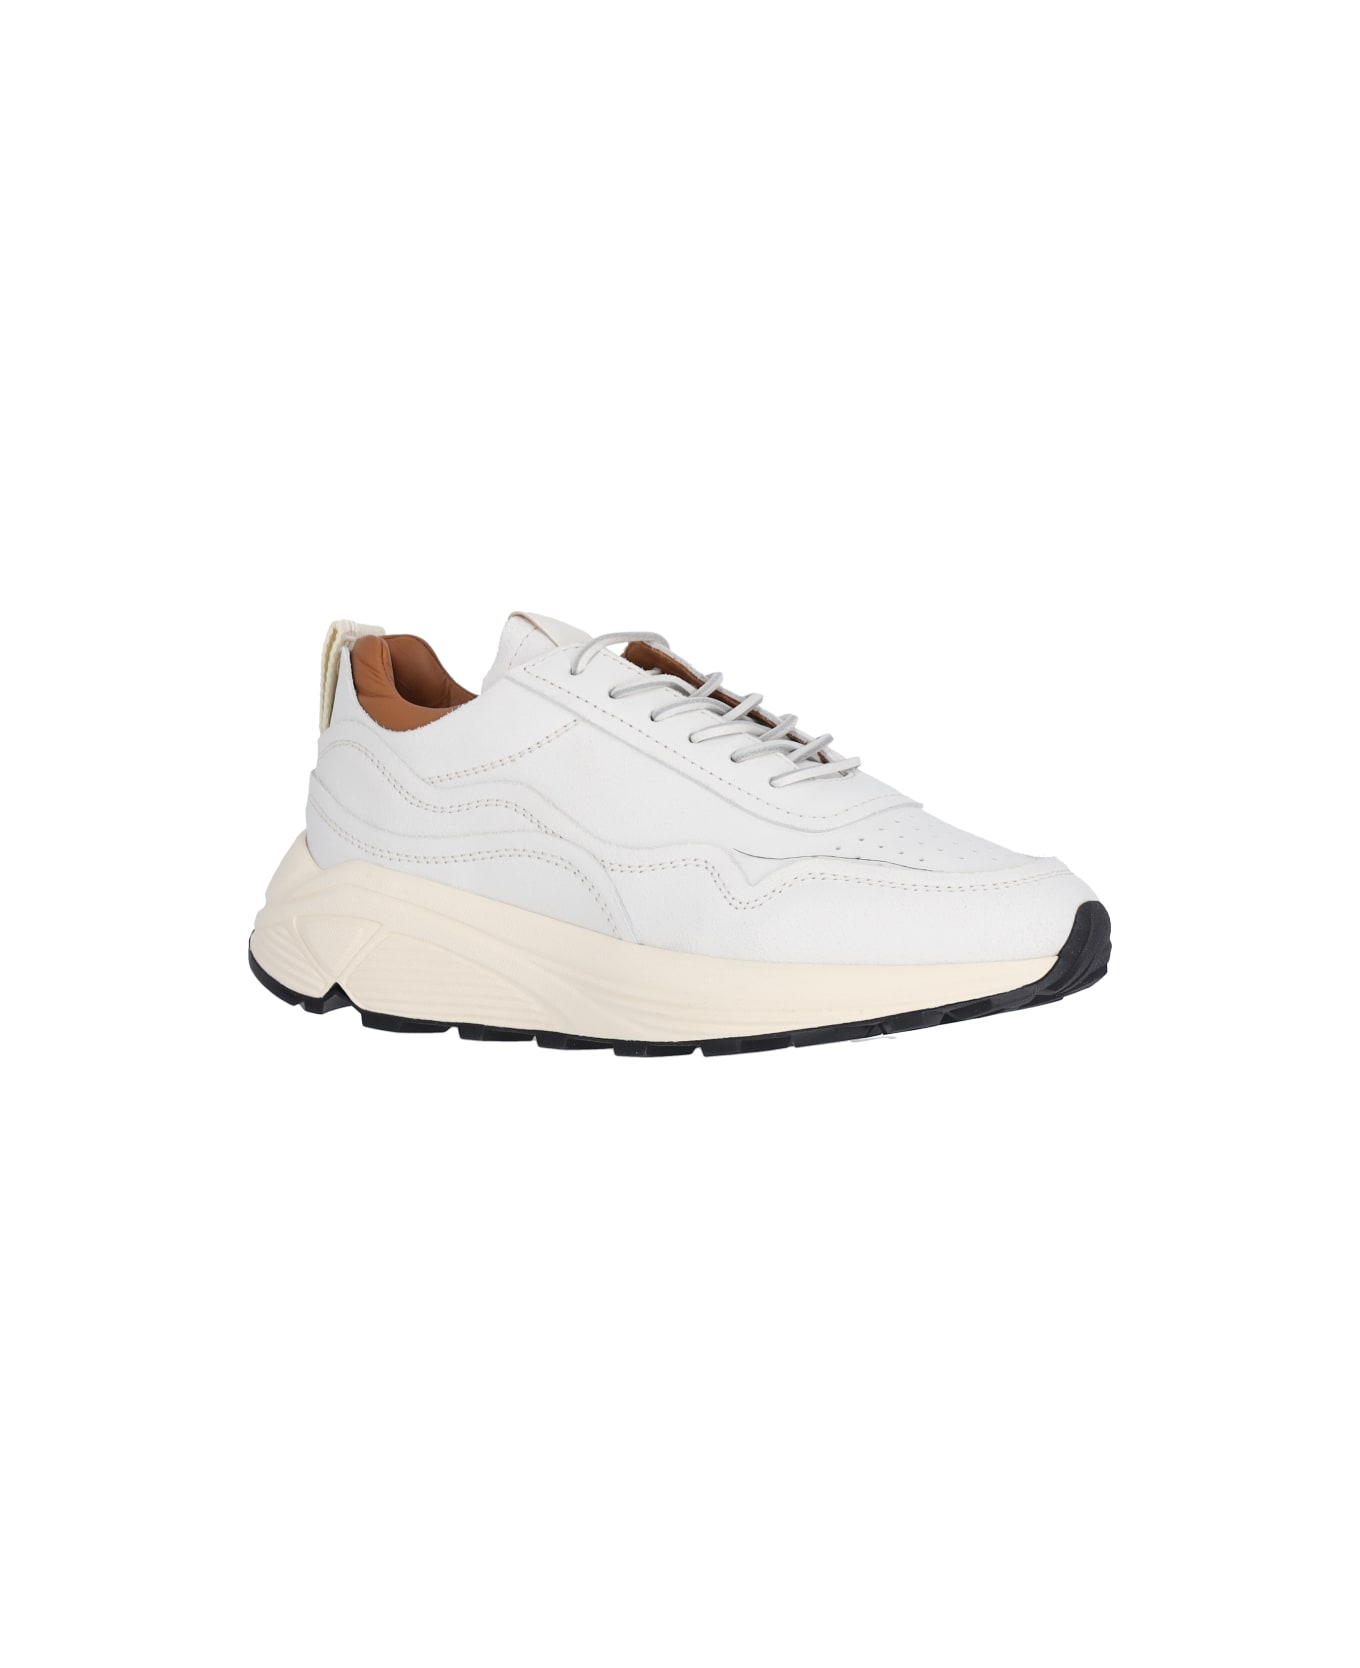 Buttero "vinci" Sneakers - White